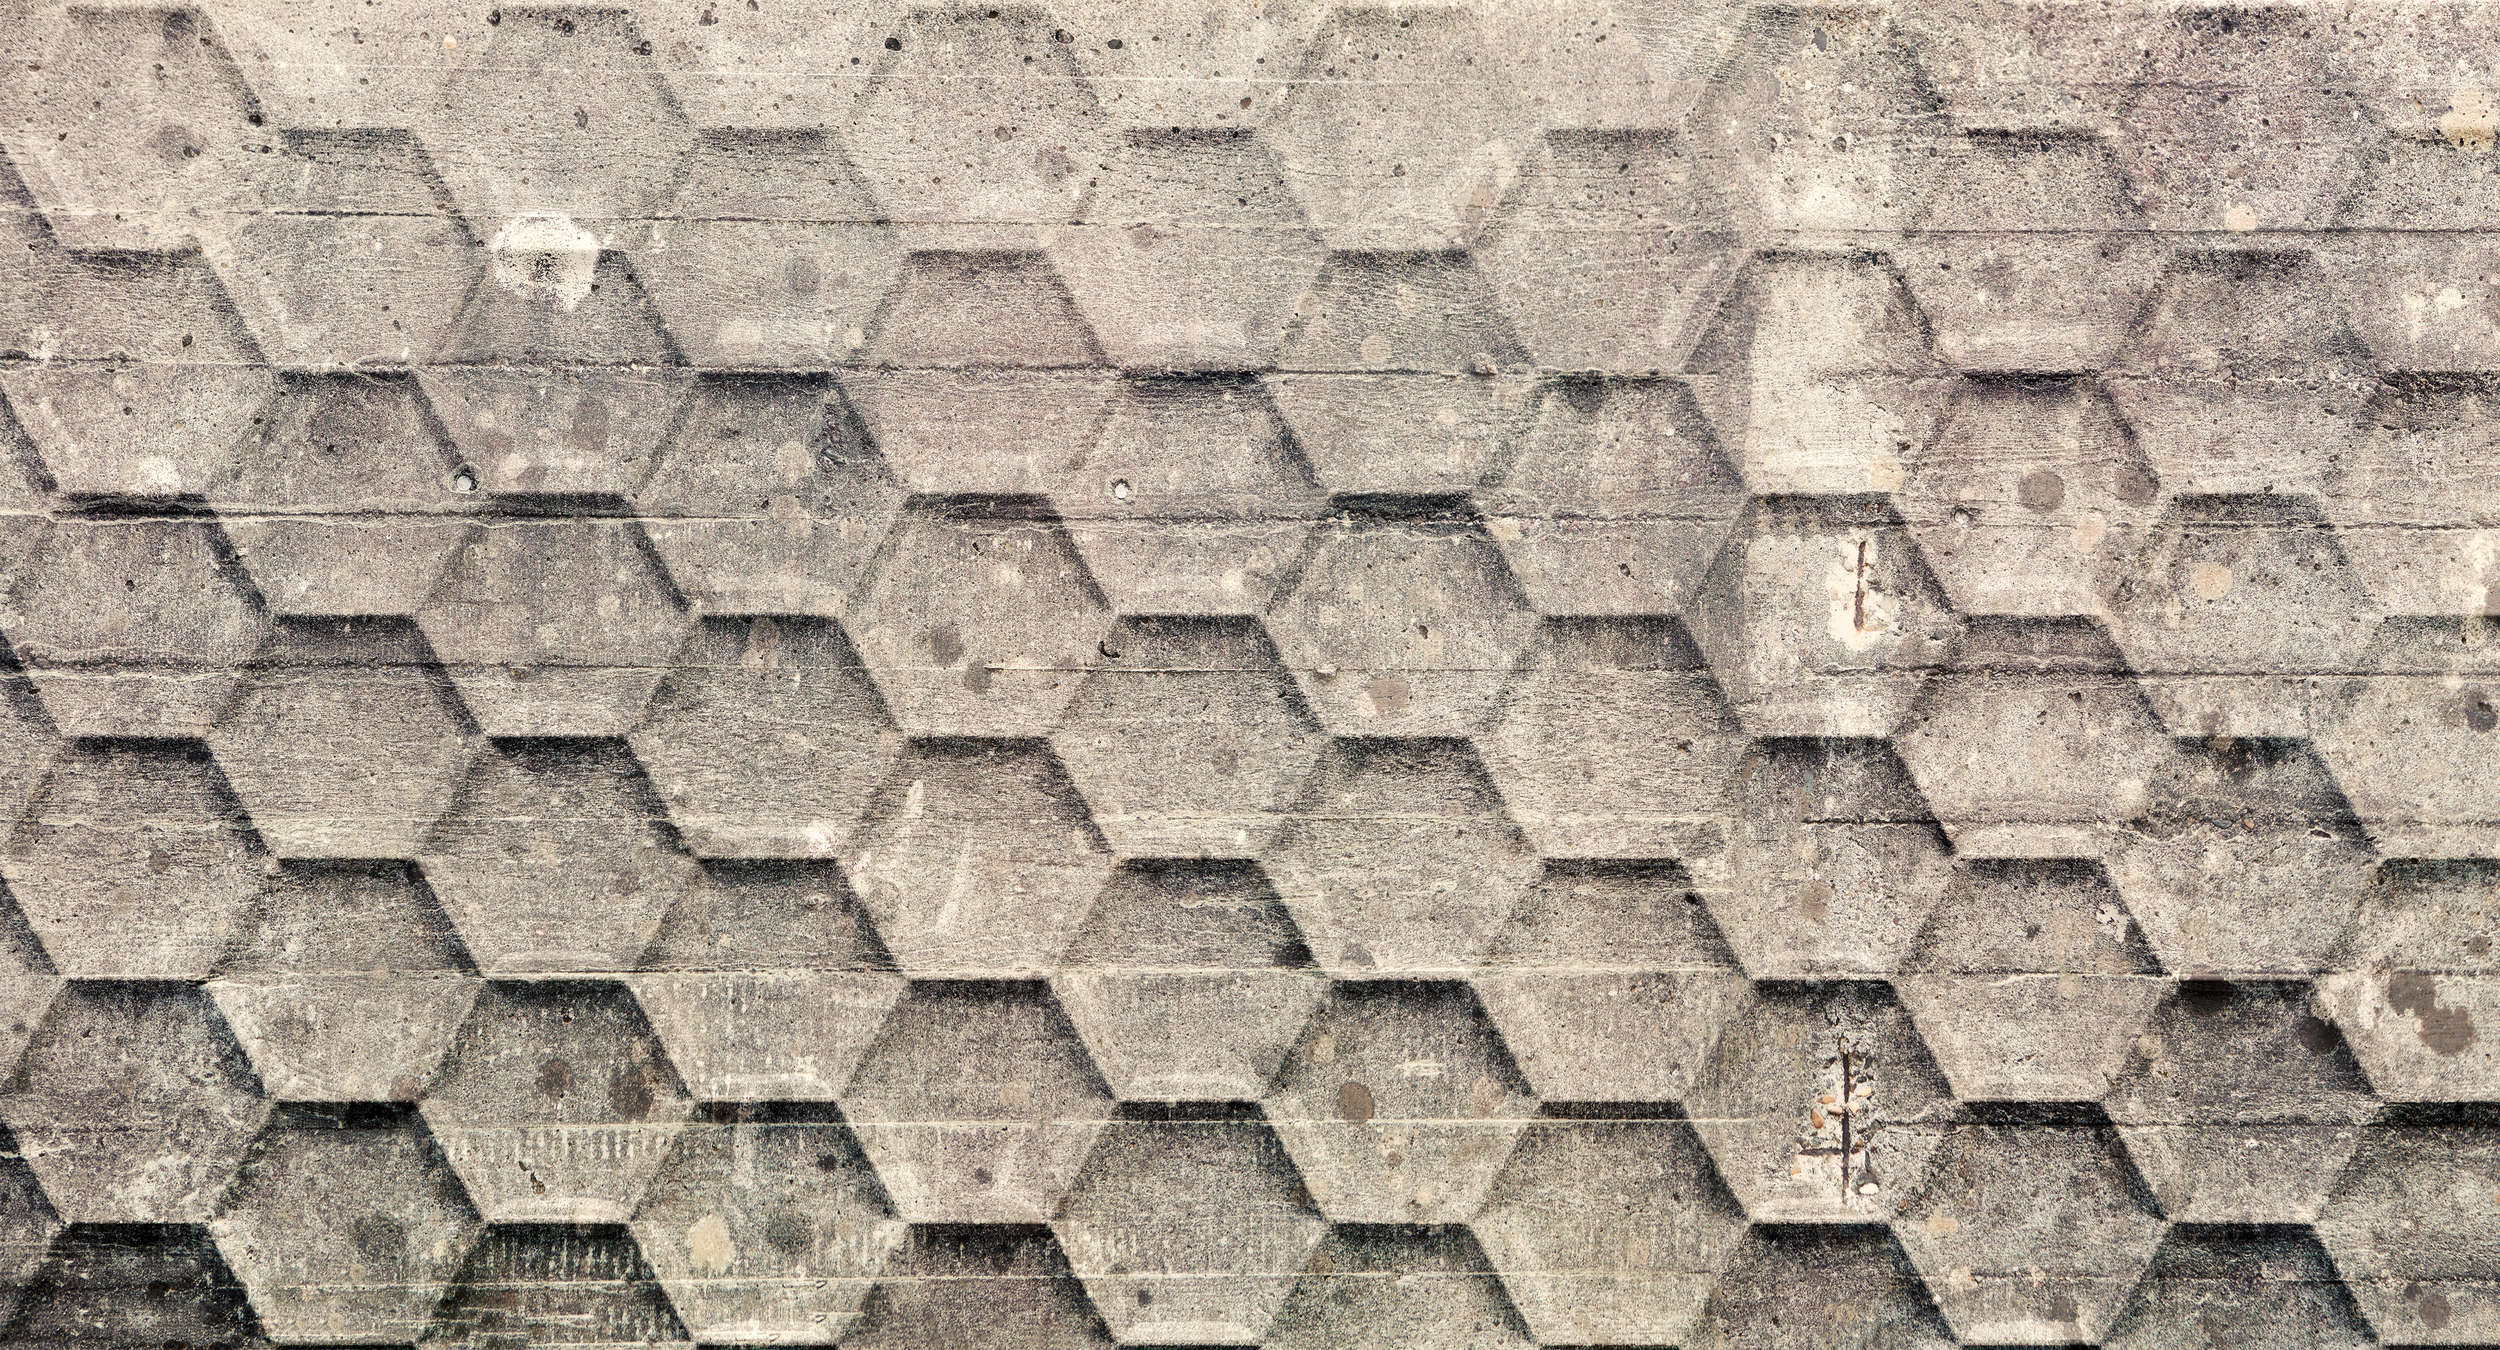             Beton Behang met Geometrisch Honingraat Patroon - Grijs, Beige, Wit
        